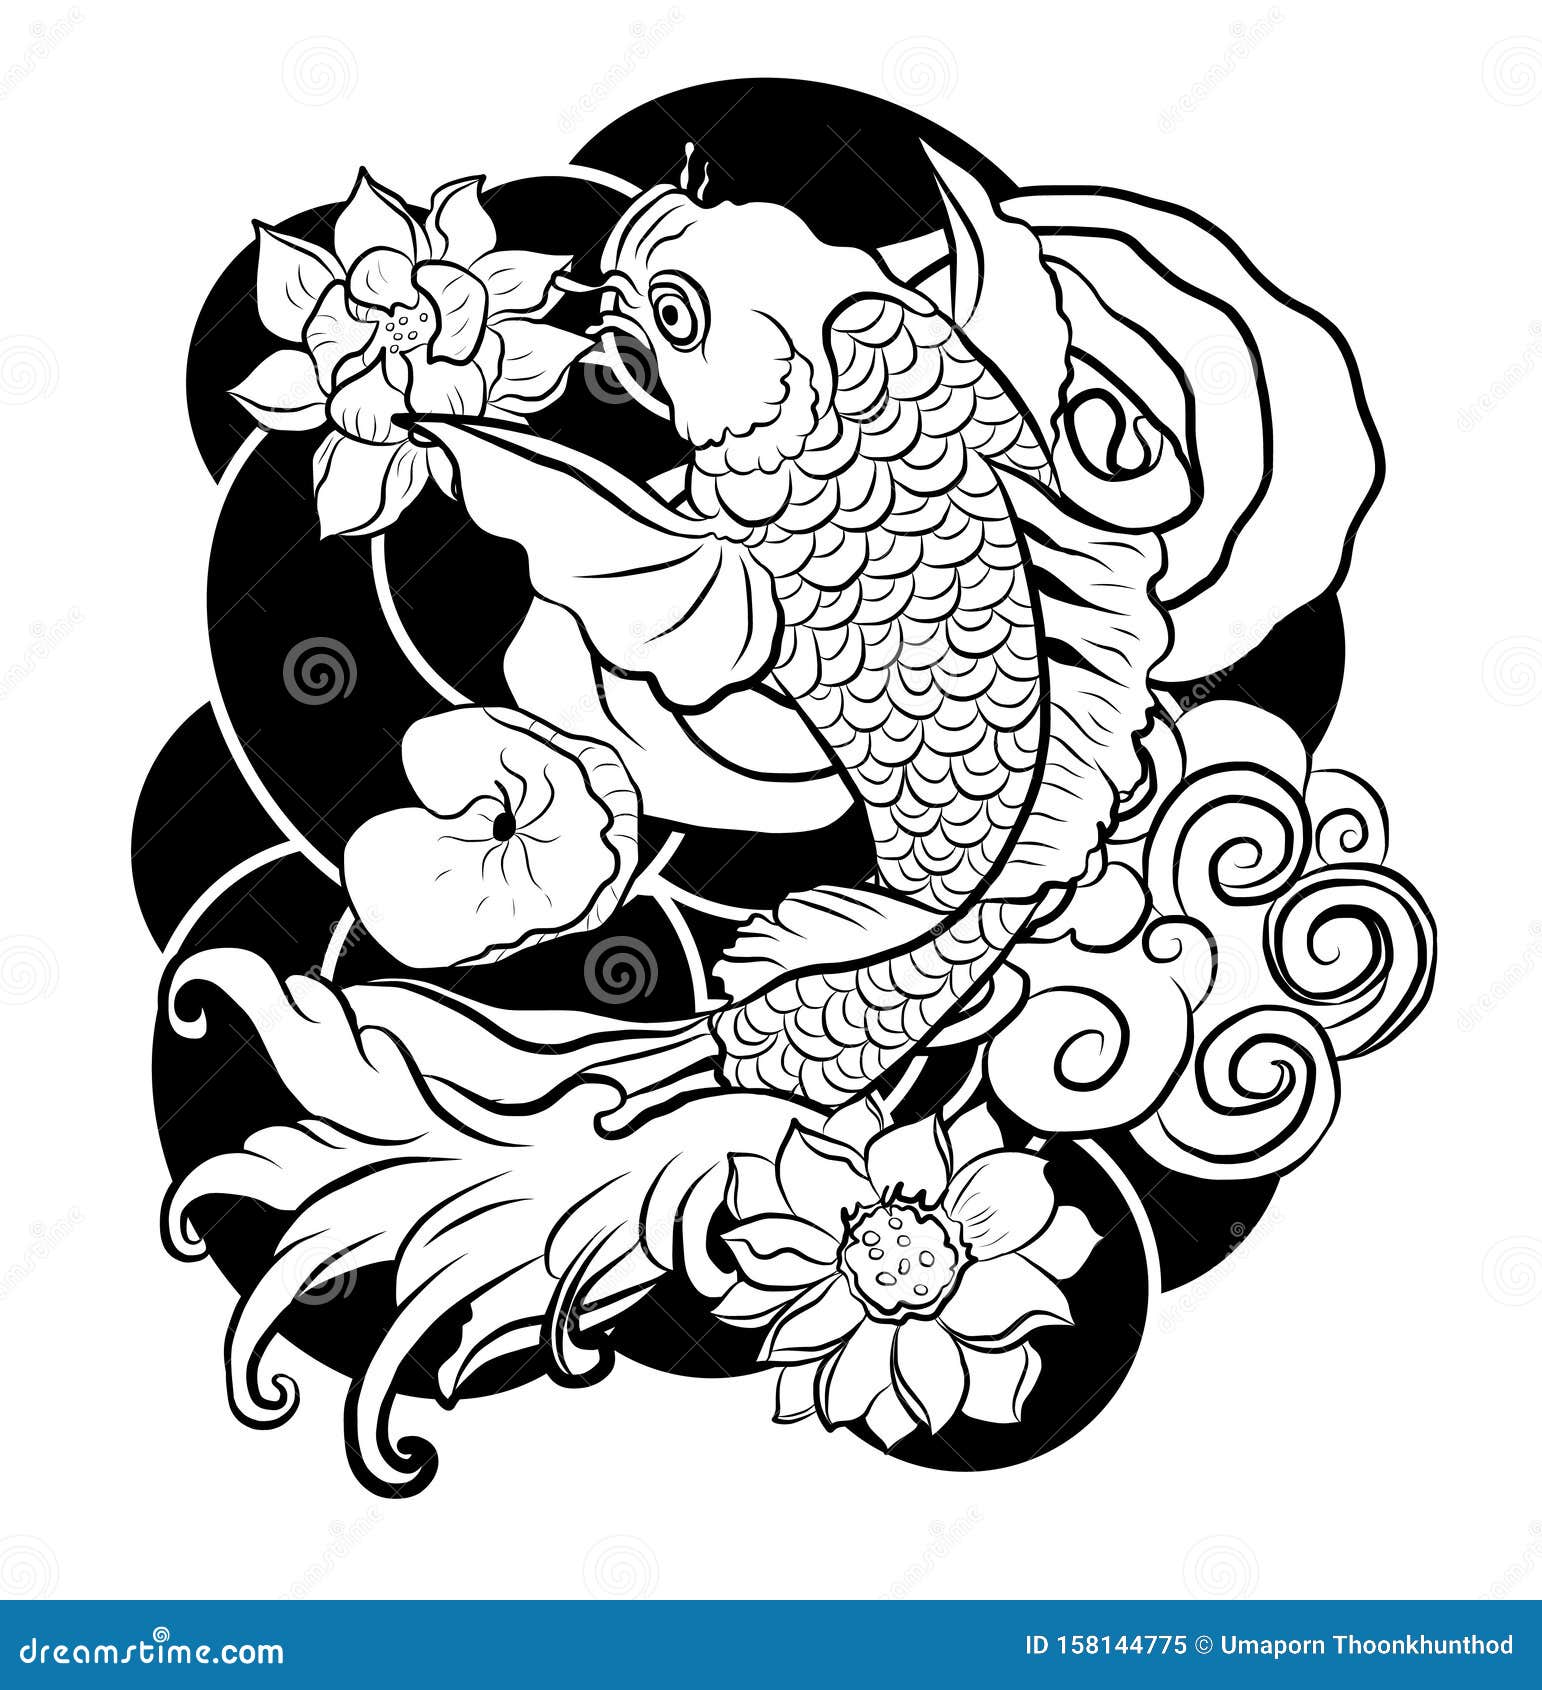 Koi fish tattoo HD wallpapers  Pxfuel